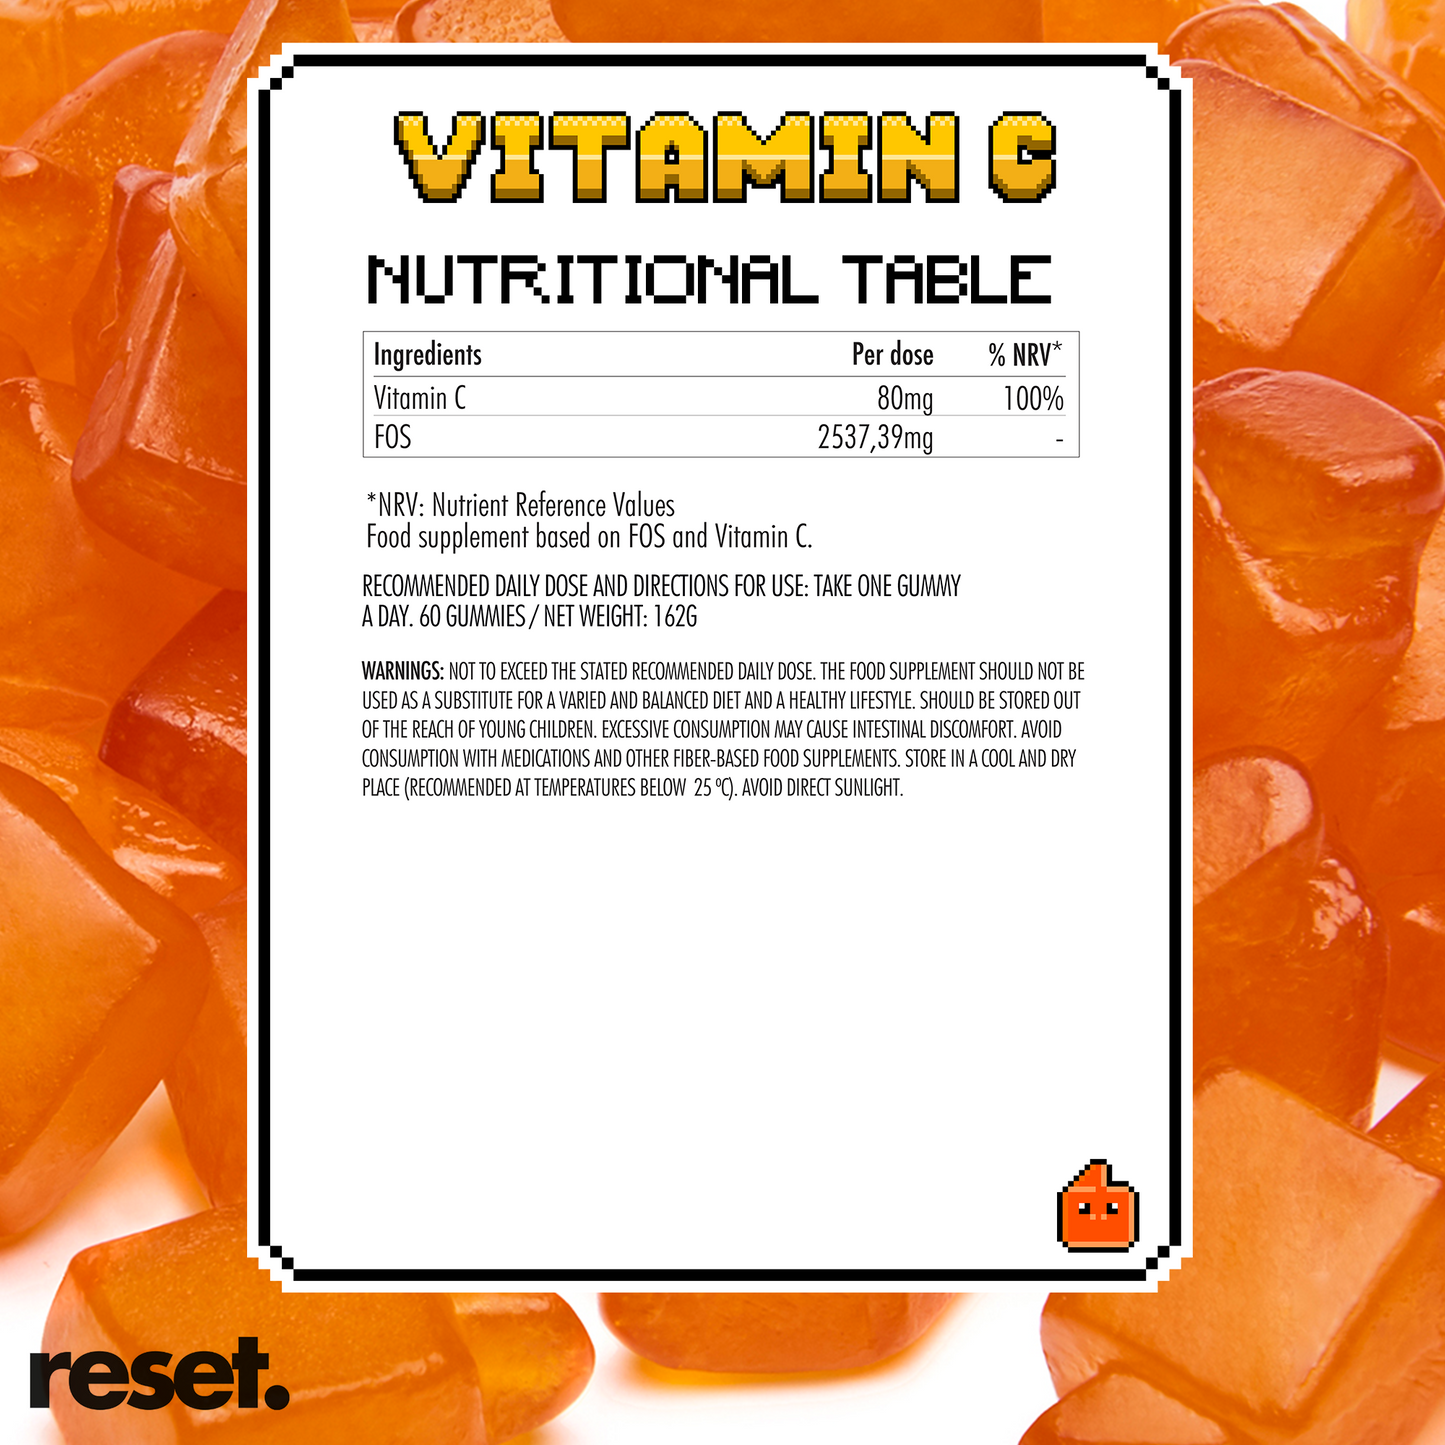 Vitamin c